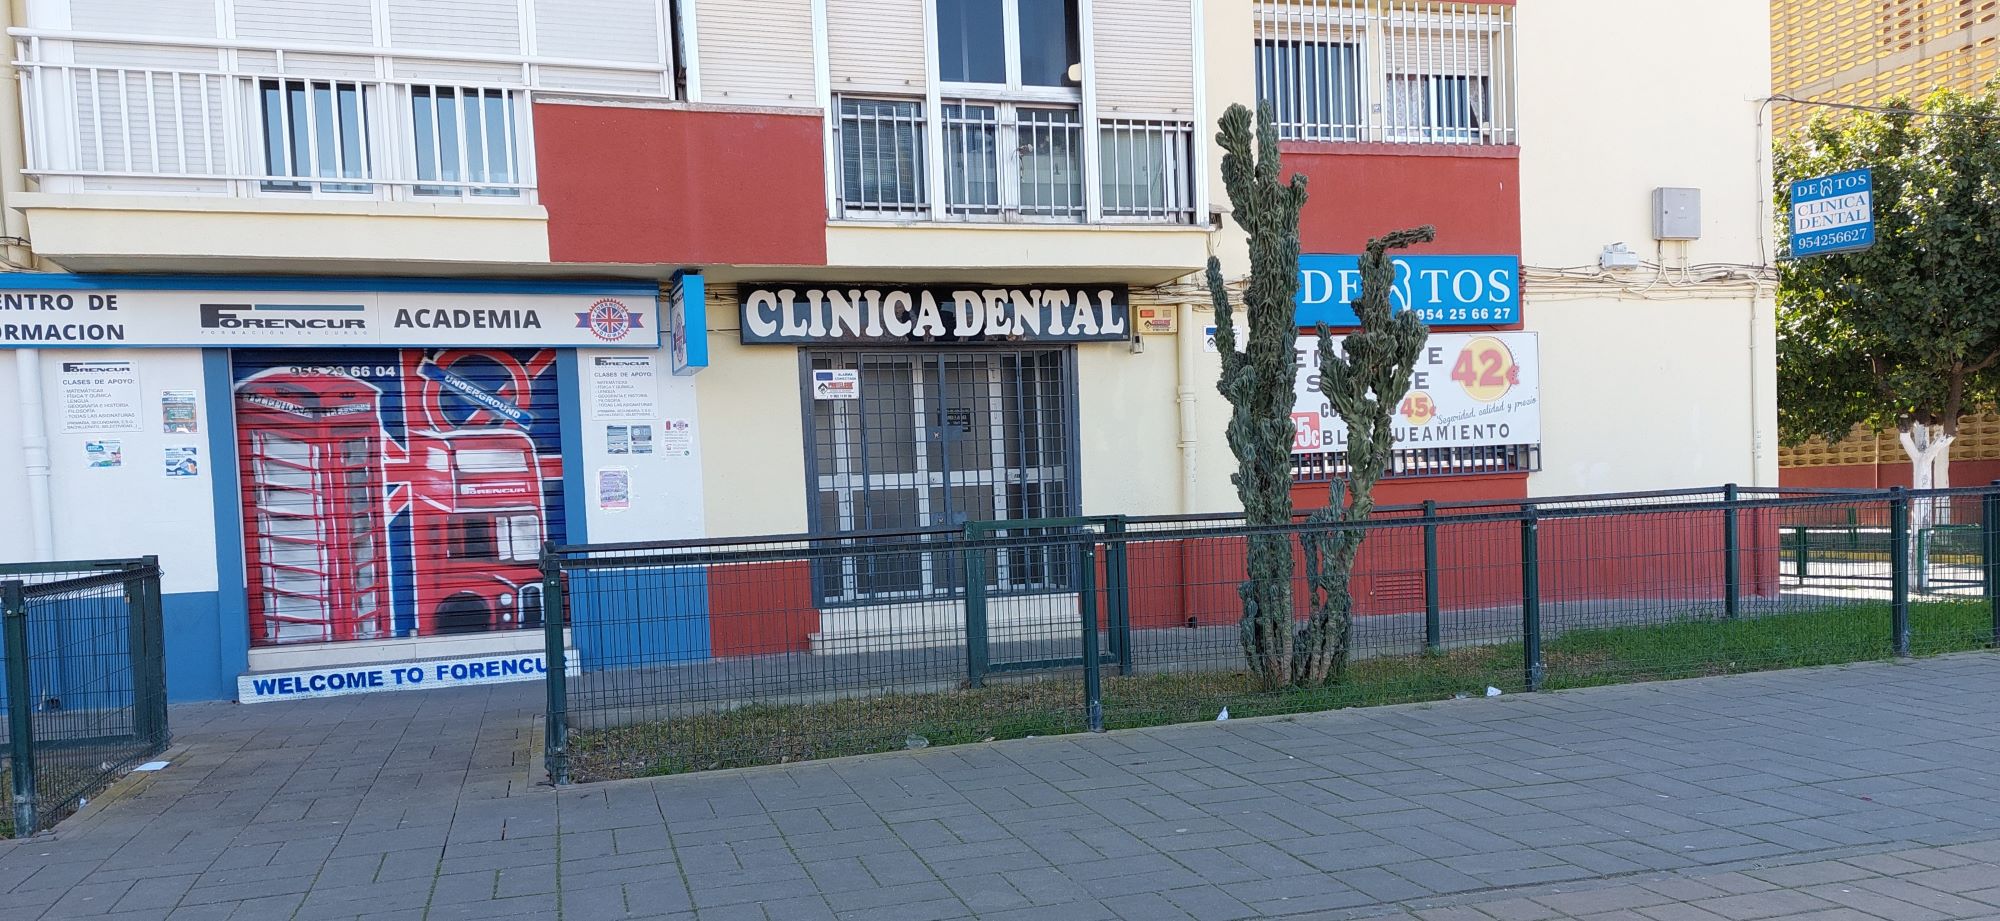 Clínica Dental Dentos - Parque Alcosa Sevilla